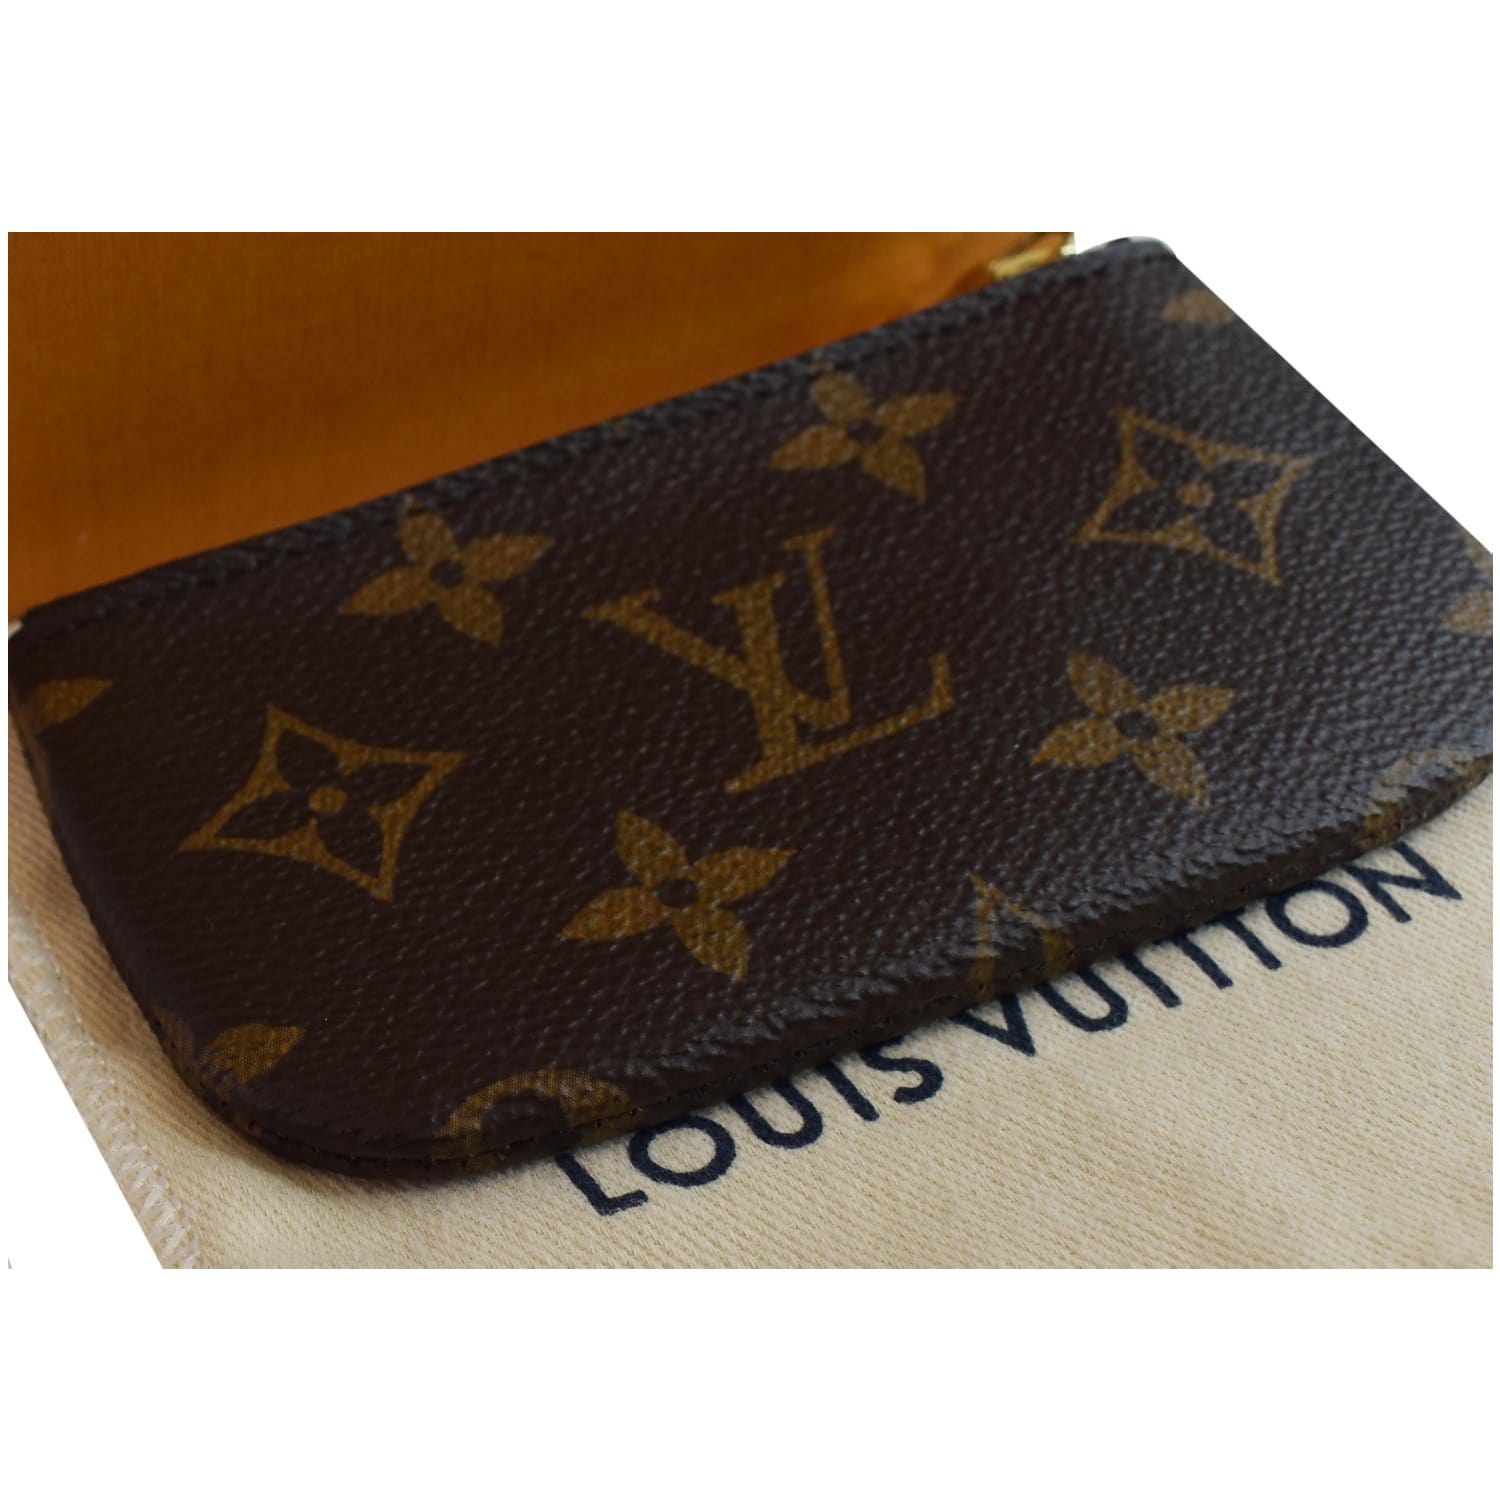 Brown Louis Vuitton Monogram Pochette Cles Coin Pouch, RvceShops Revival